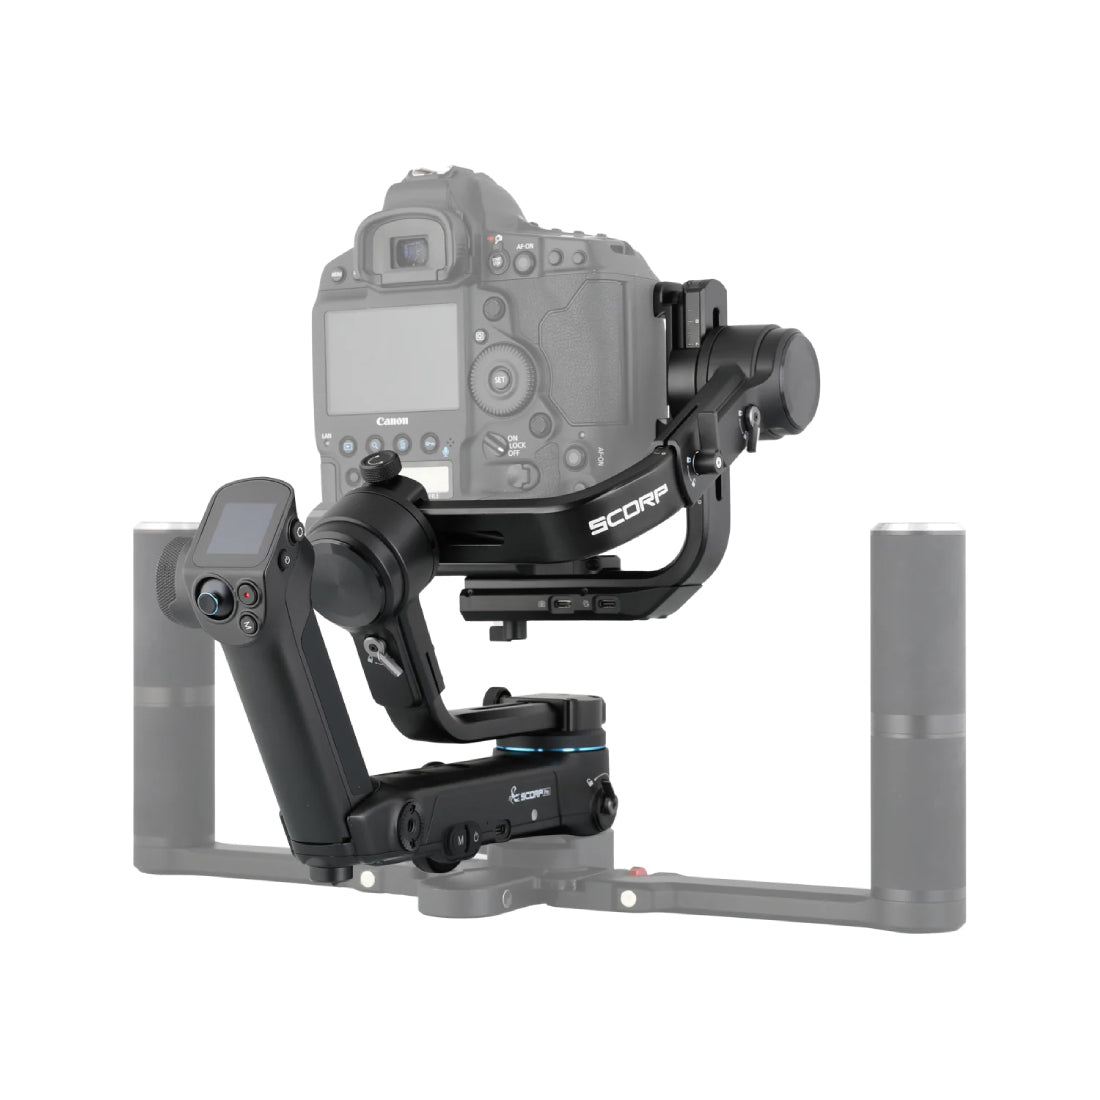 Feiyu SCORP Pro, 3 Axis Handheld Gimbal for DSLR - حامل كاميرا - Store 974 | ستور ٩٧٤